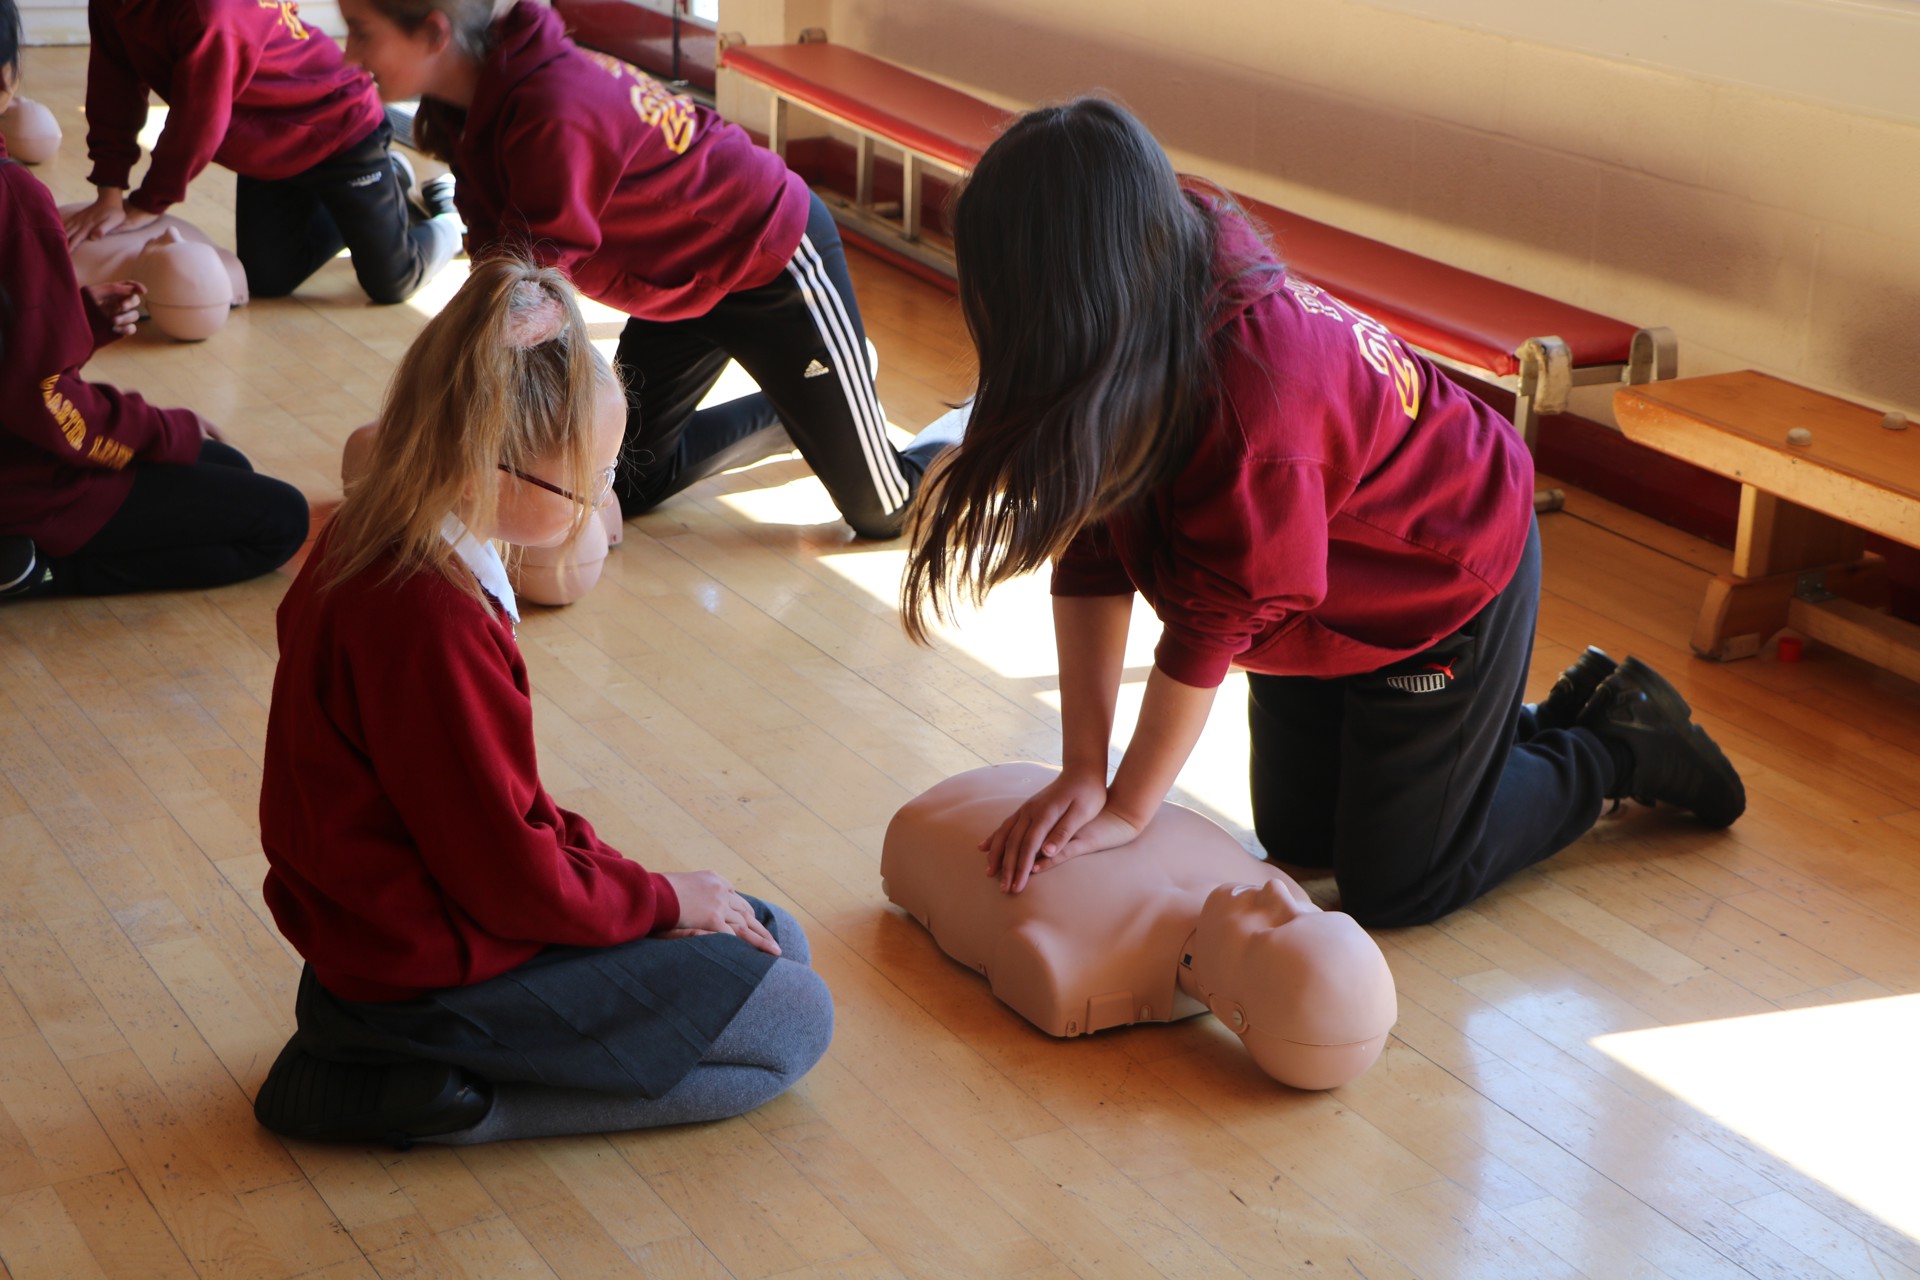 School children practicing CPR on a manekin